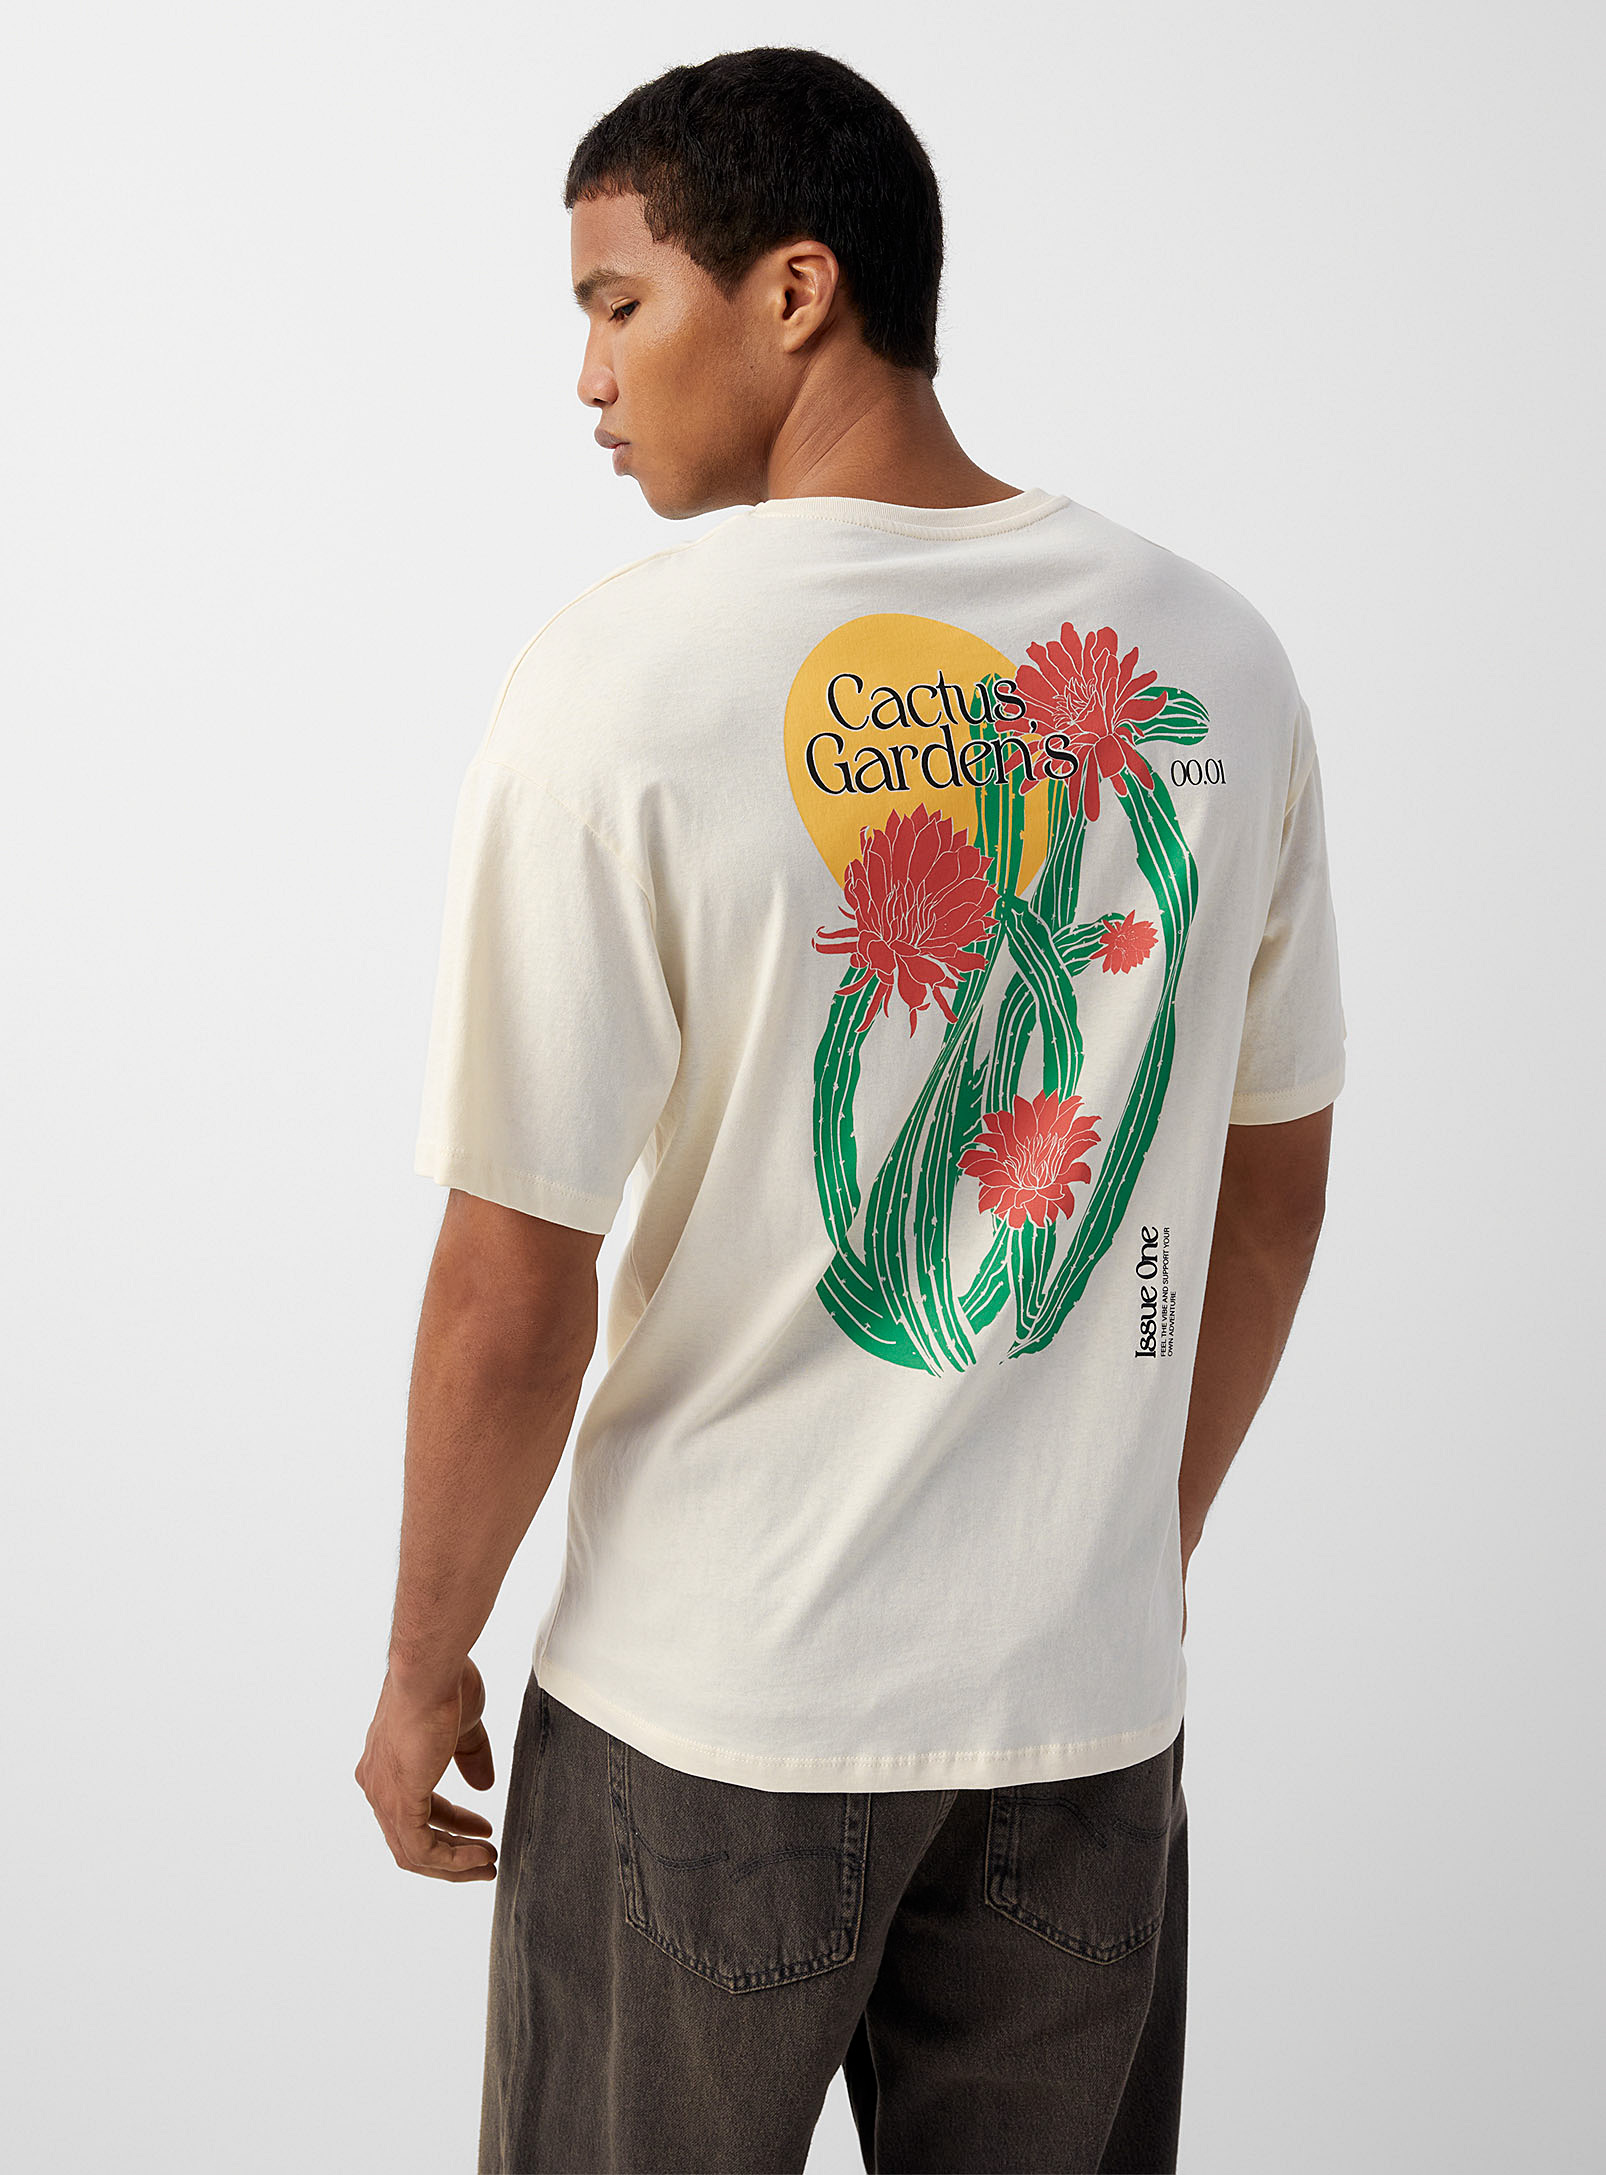 Jack & Jones - Men's Cactus Garden T-shirt